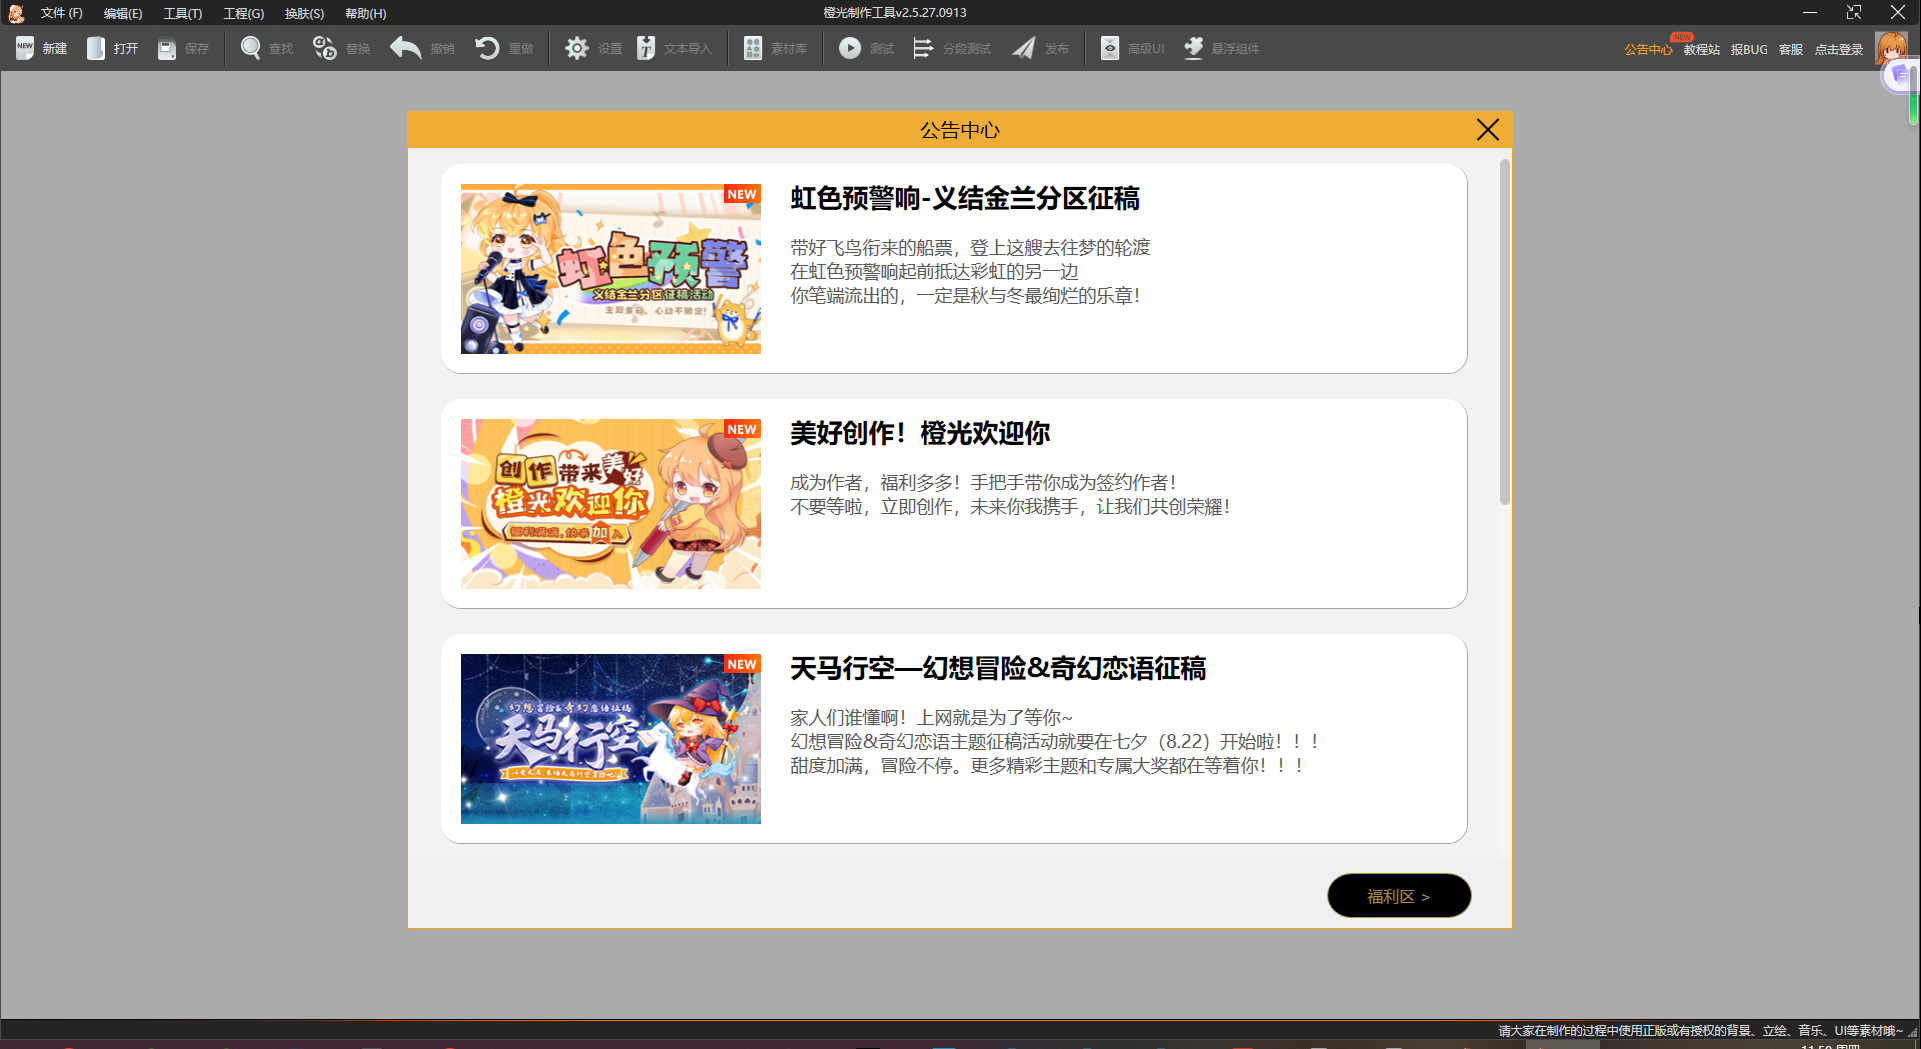 橙光游戏制作工具电脑版下载 v2.5.27.0913官方版